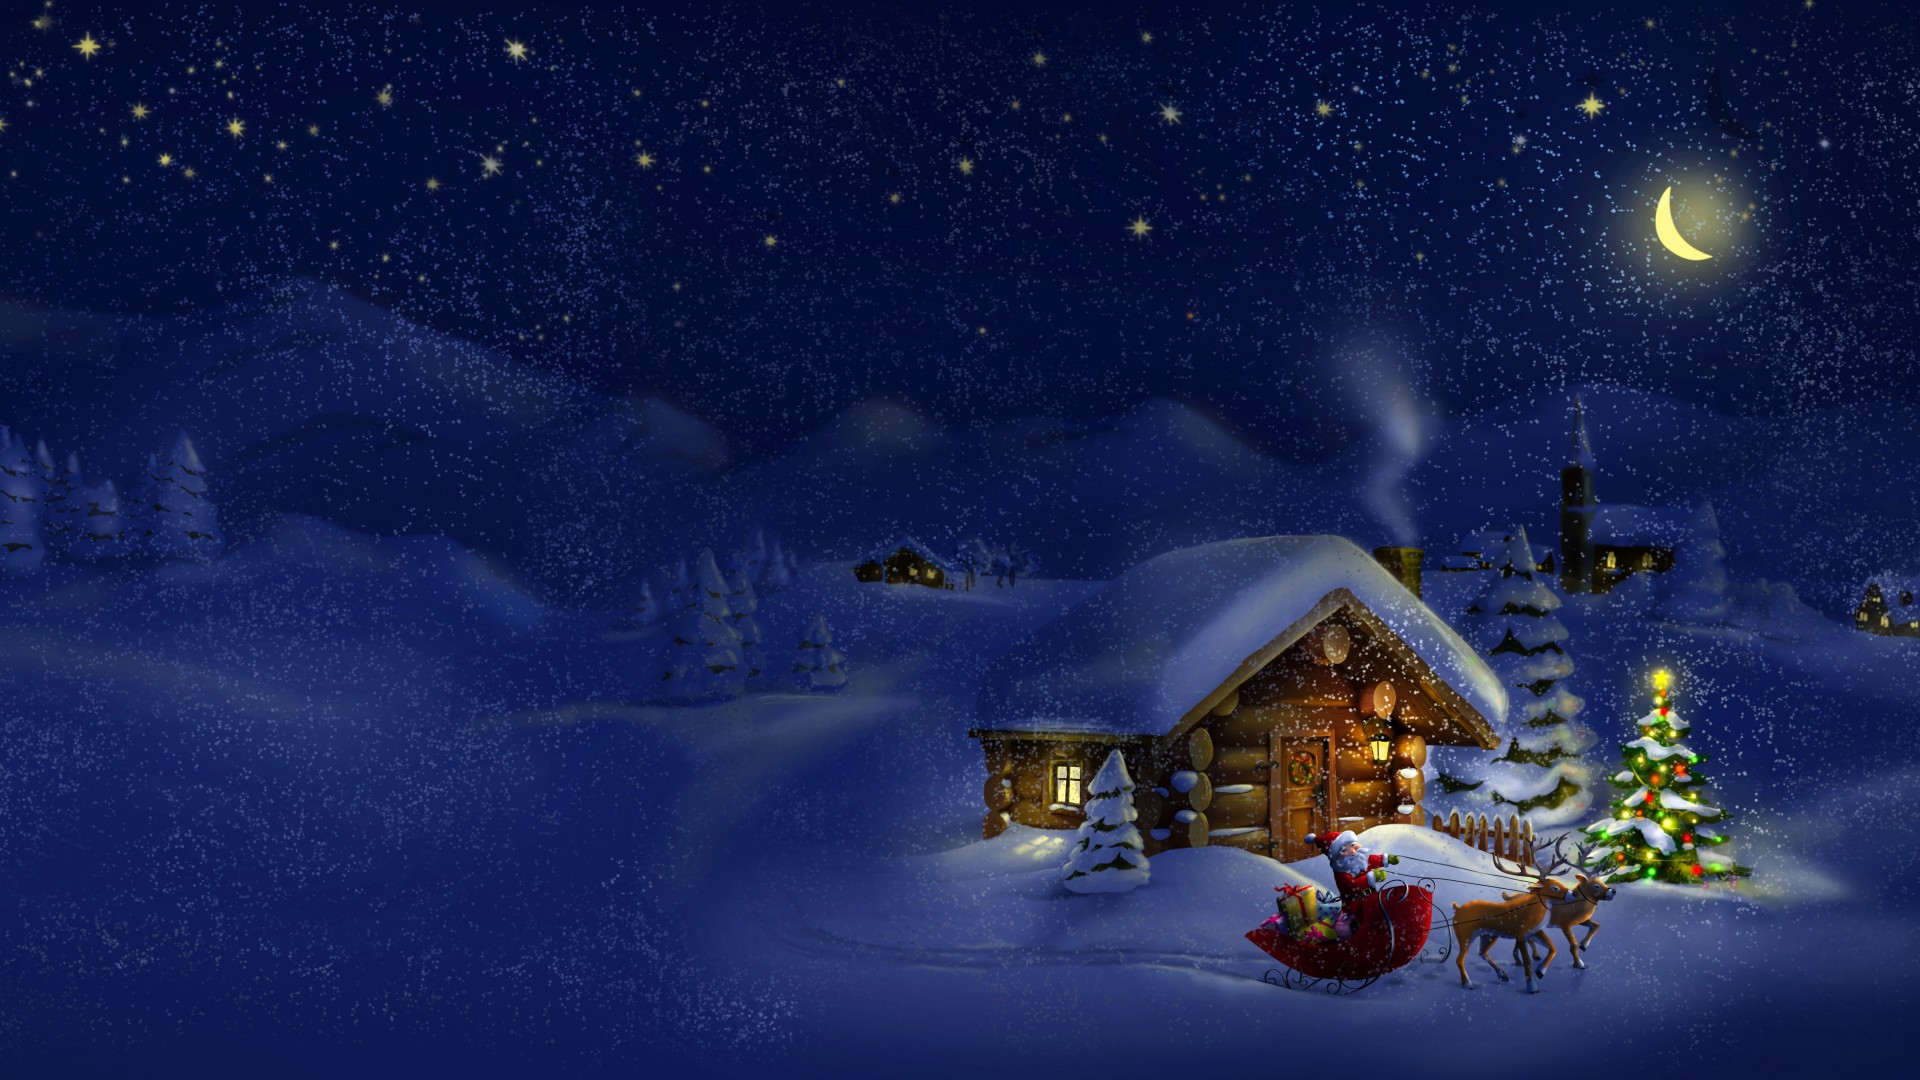 冬夜雪舞,小房灯光映雪景,圣诞风情壁纸免费下载